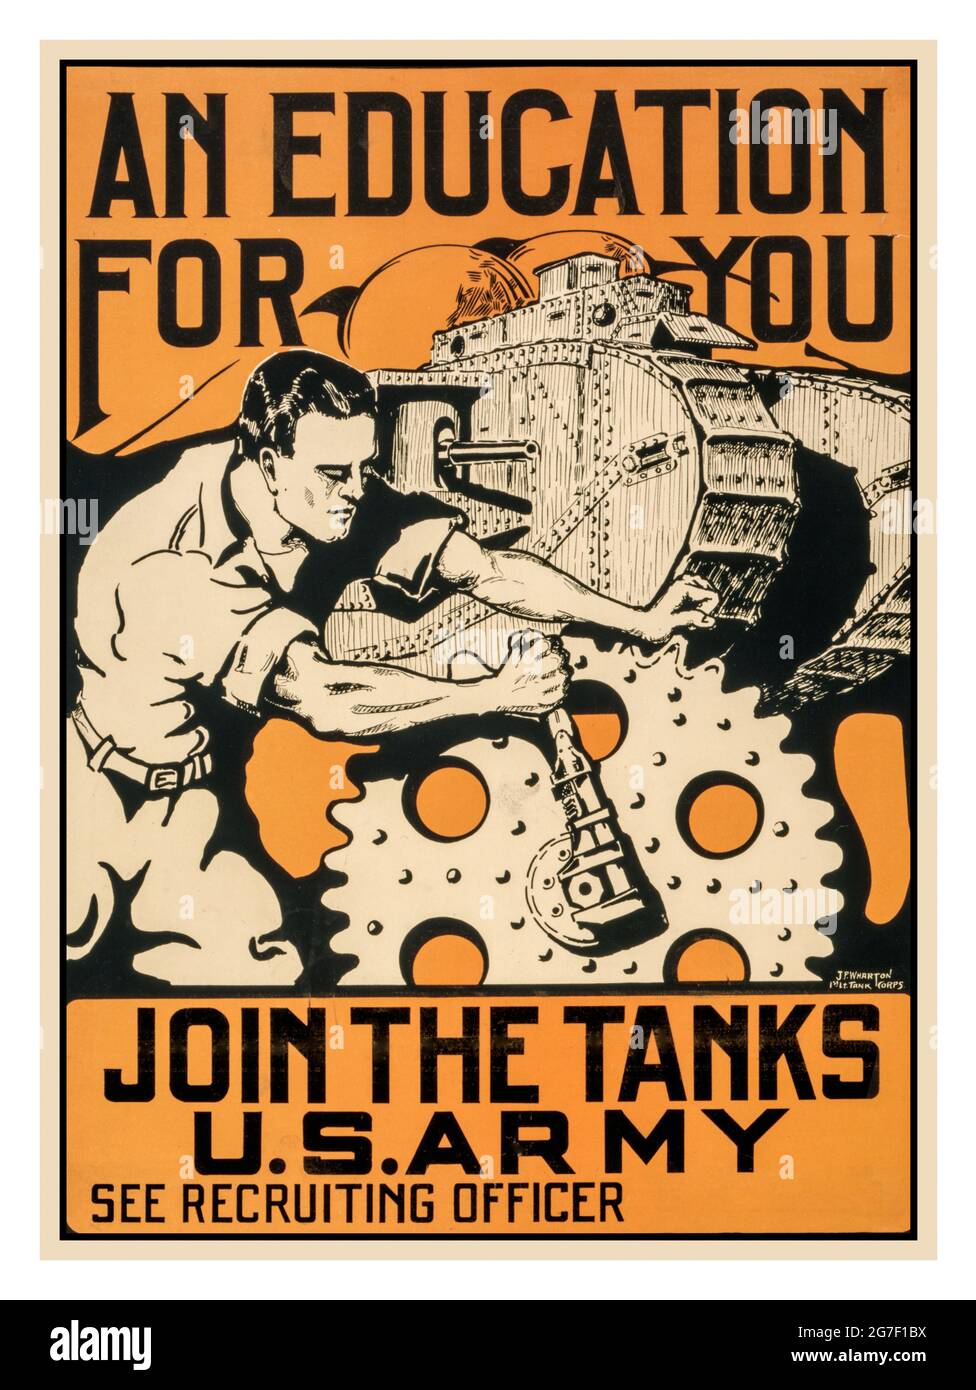 WW1 propagande de l'armée américaine vintage recrutement affiche 'une éducation pour vous' 'Rejoignez les chars Armée américaine voir officier de recrutement' 1914-1918 propagande de la première Guerre mondiale recrutement affiche USA Amérique Banque D'Images